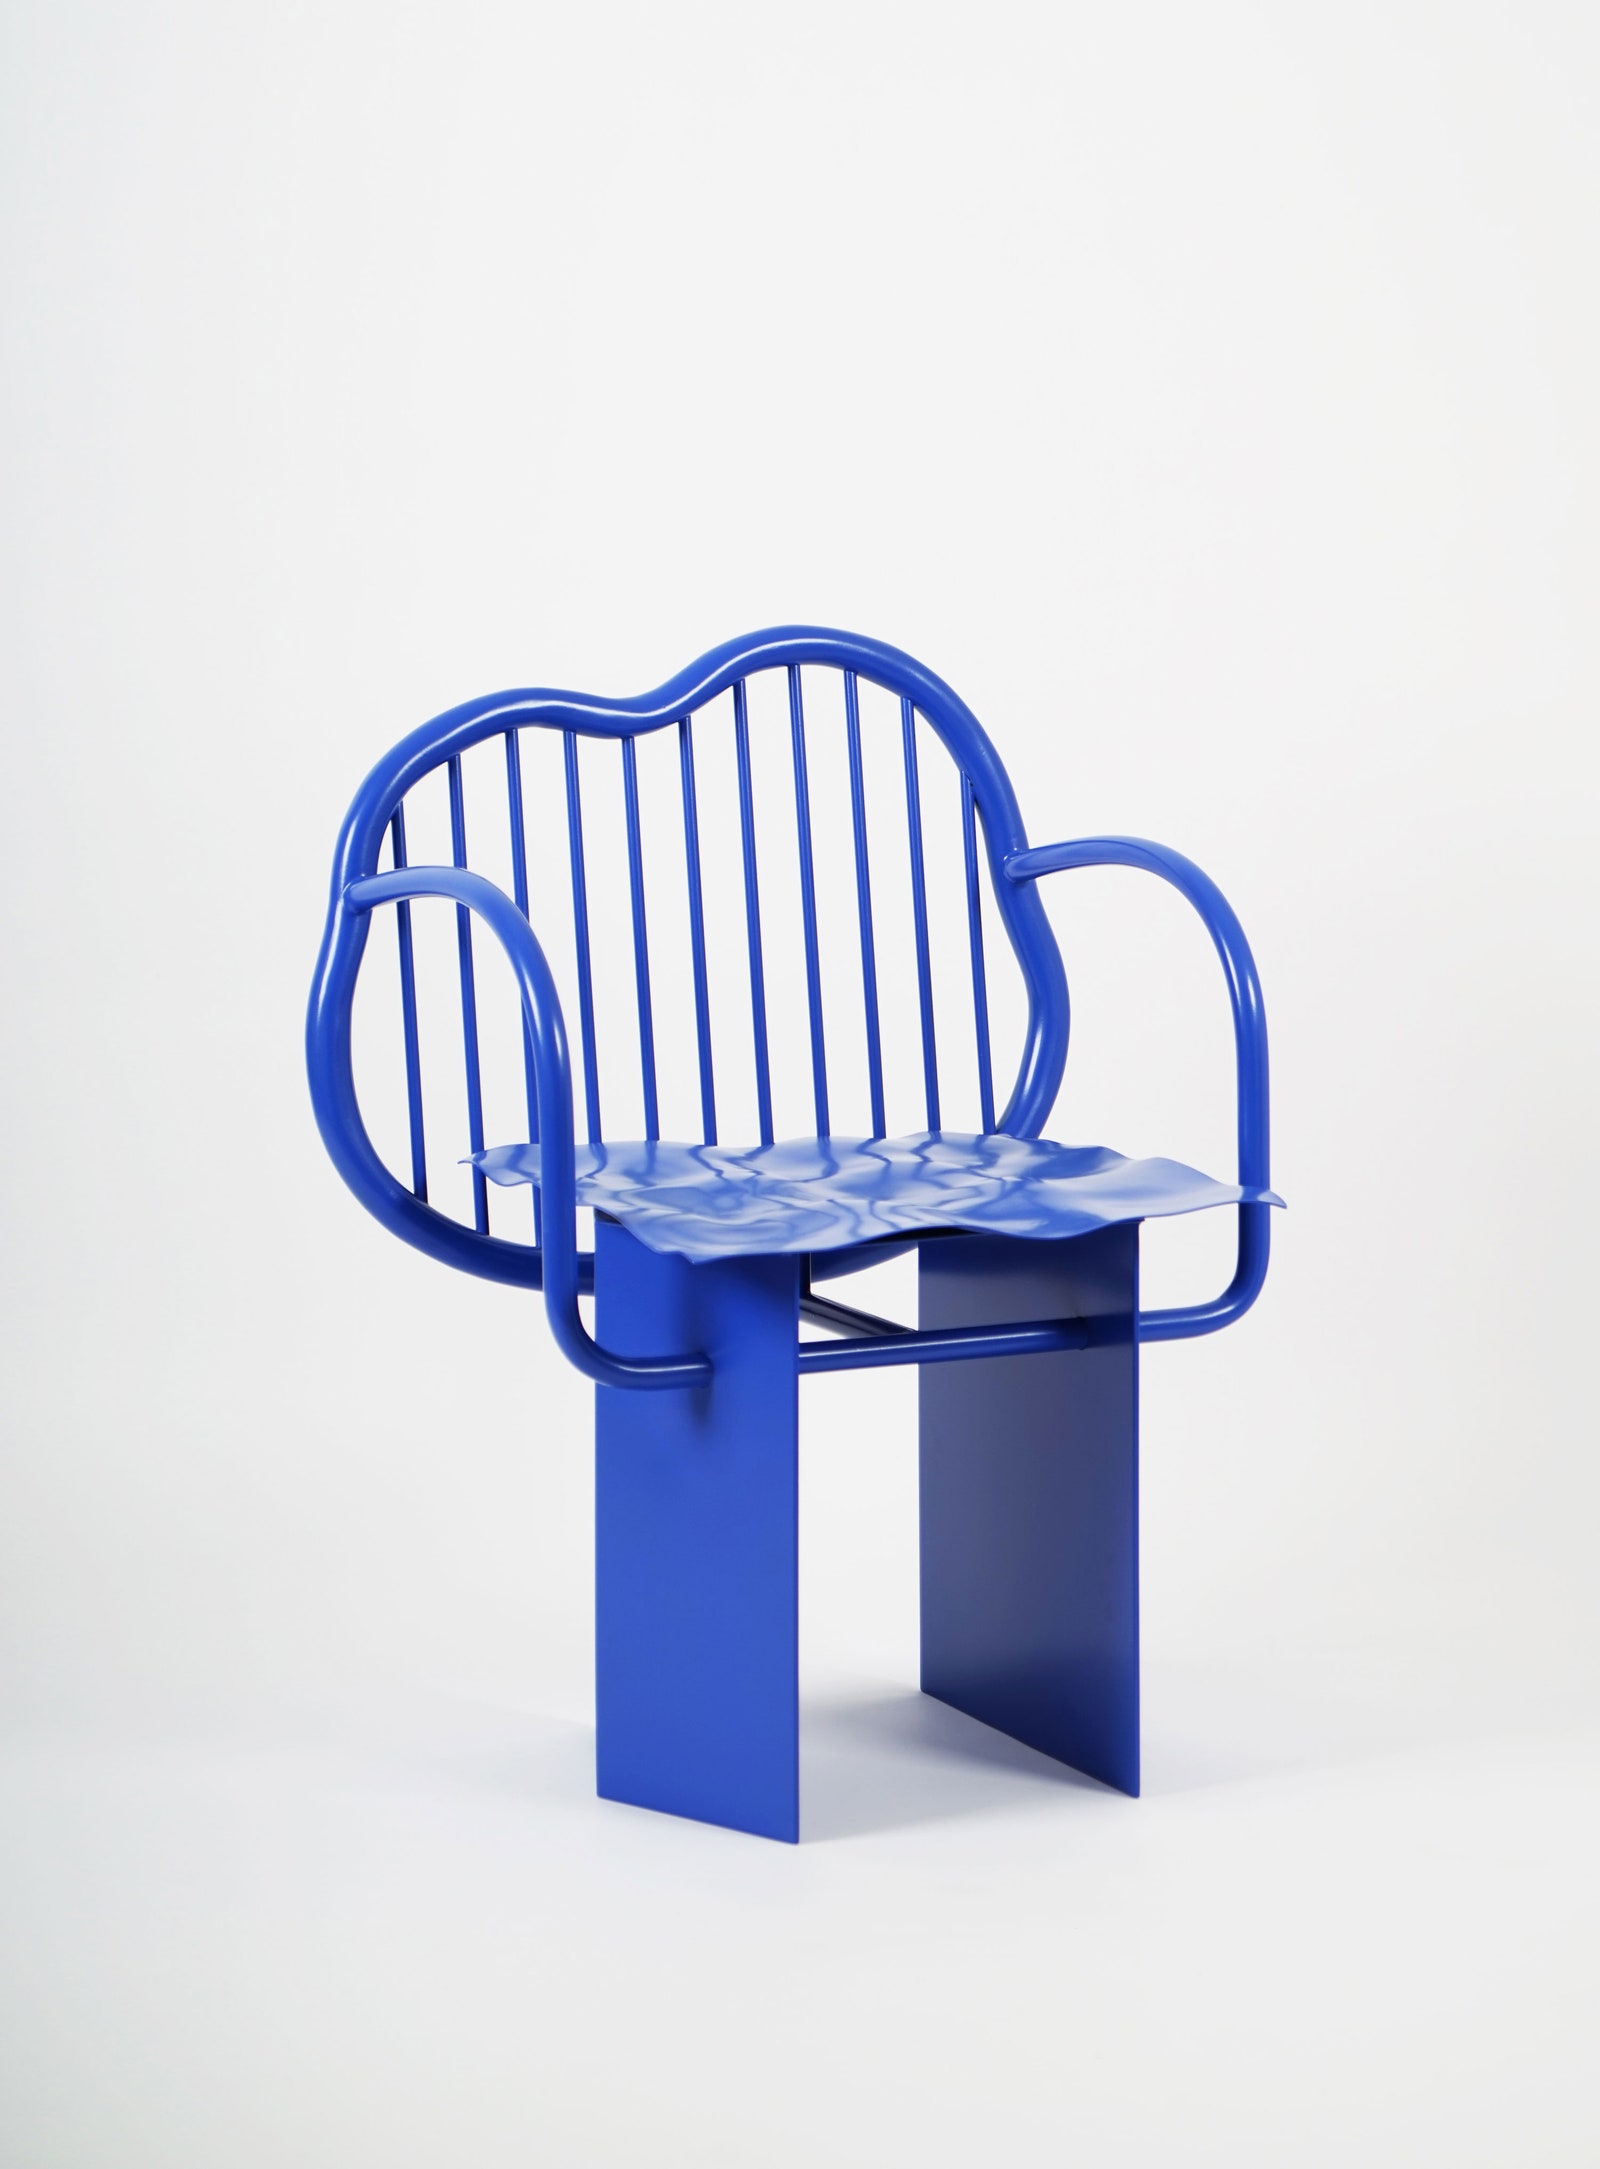 Стул “Shiny chair”. Дизайнер Максим Щербаков